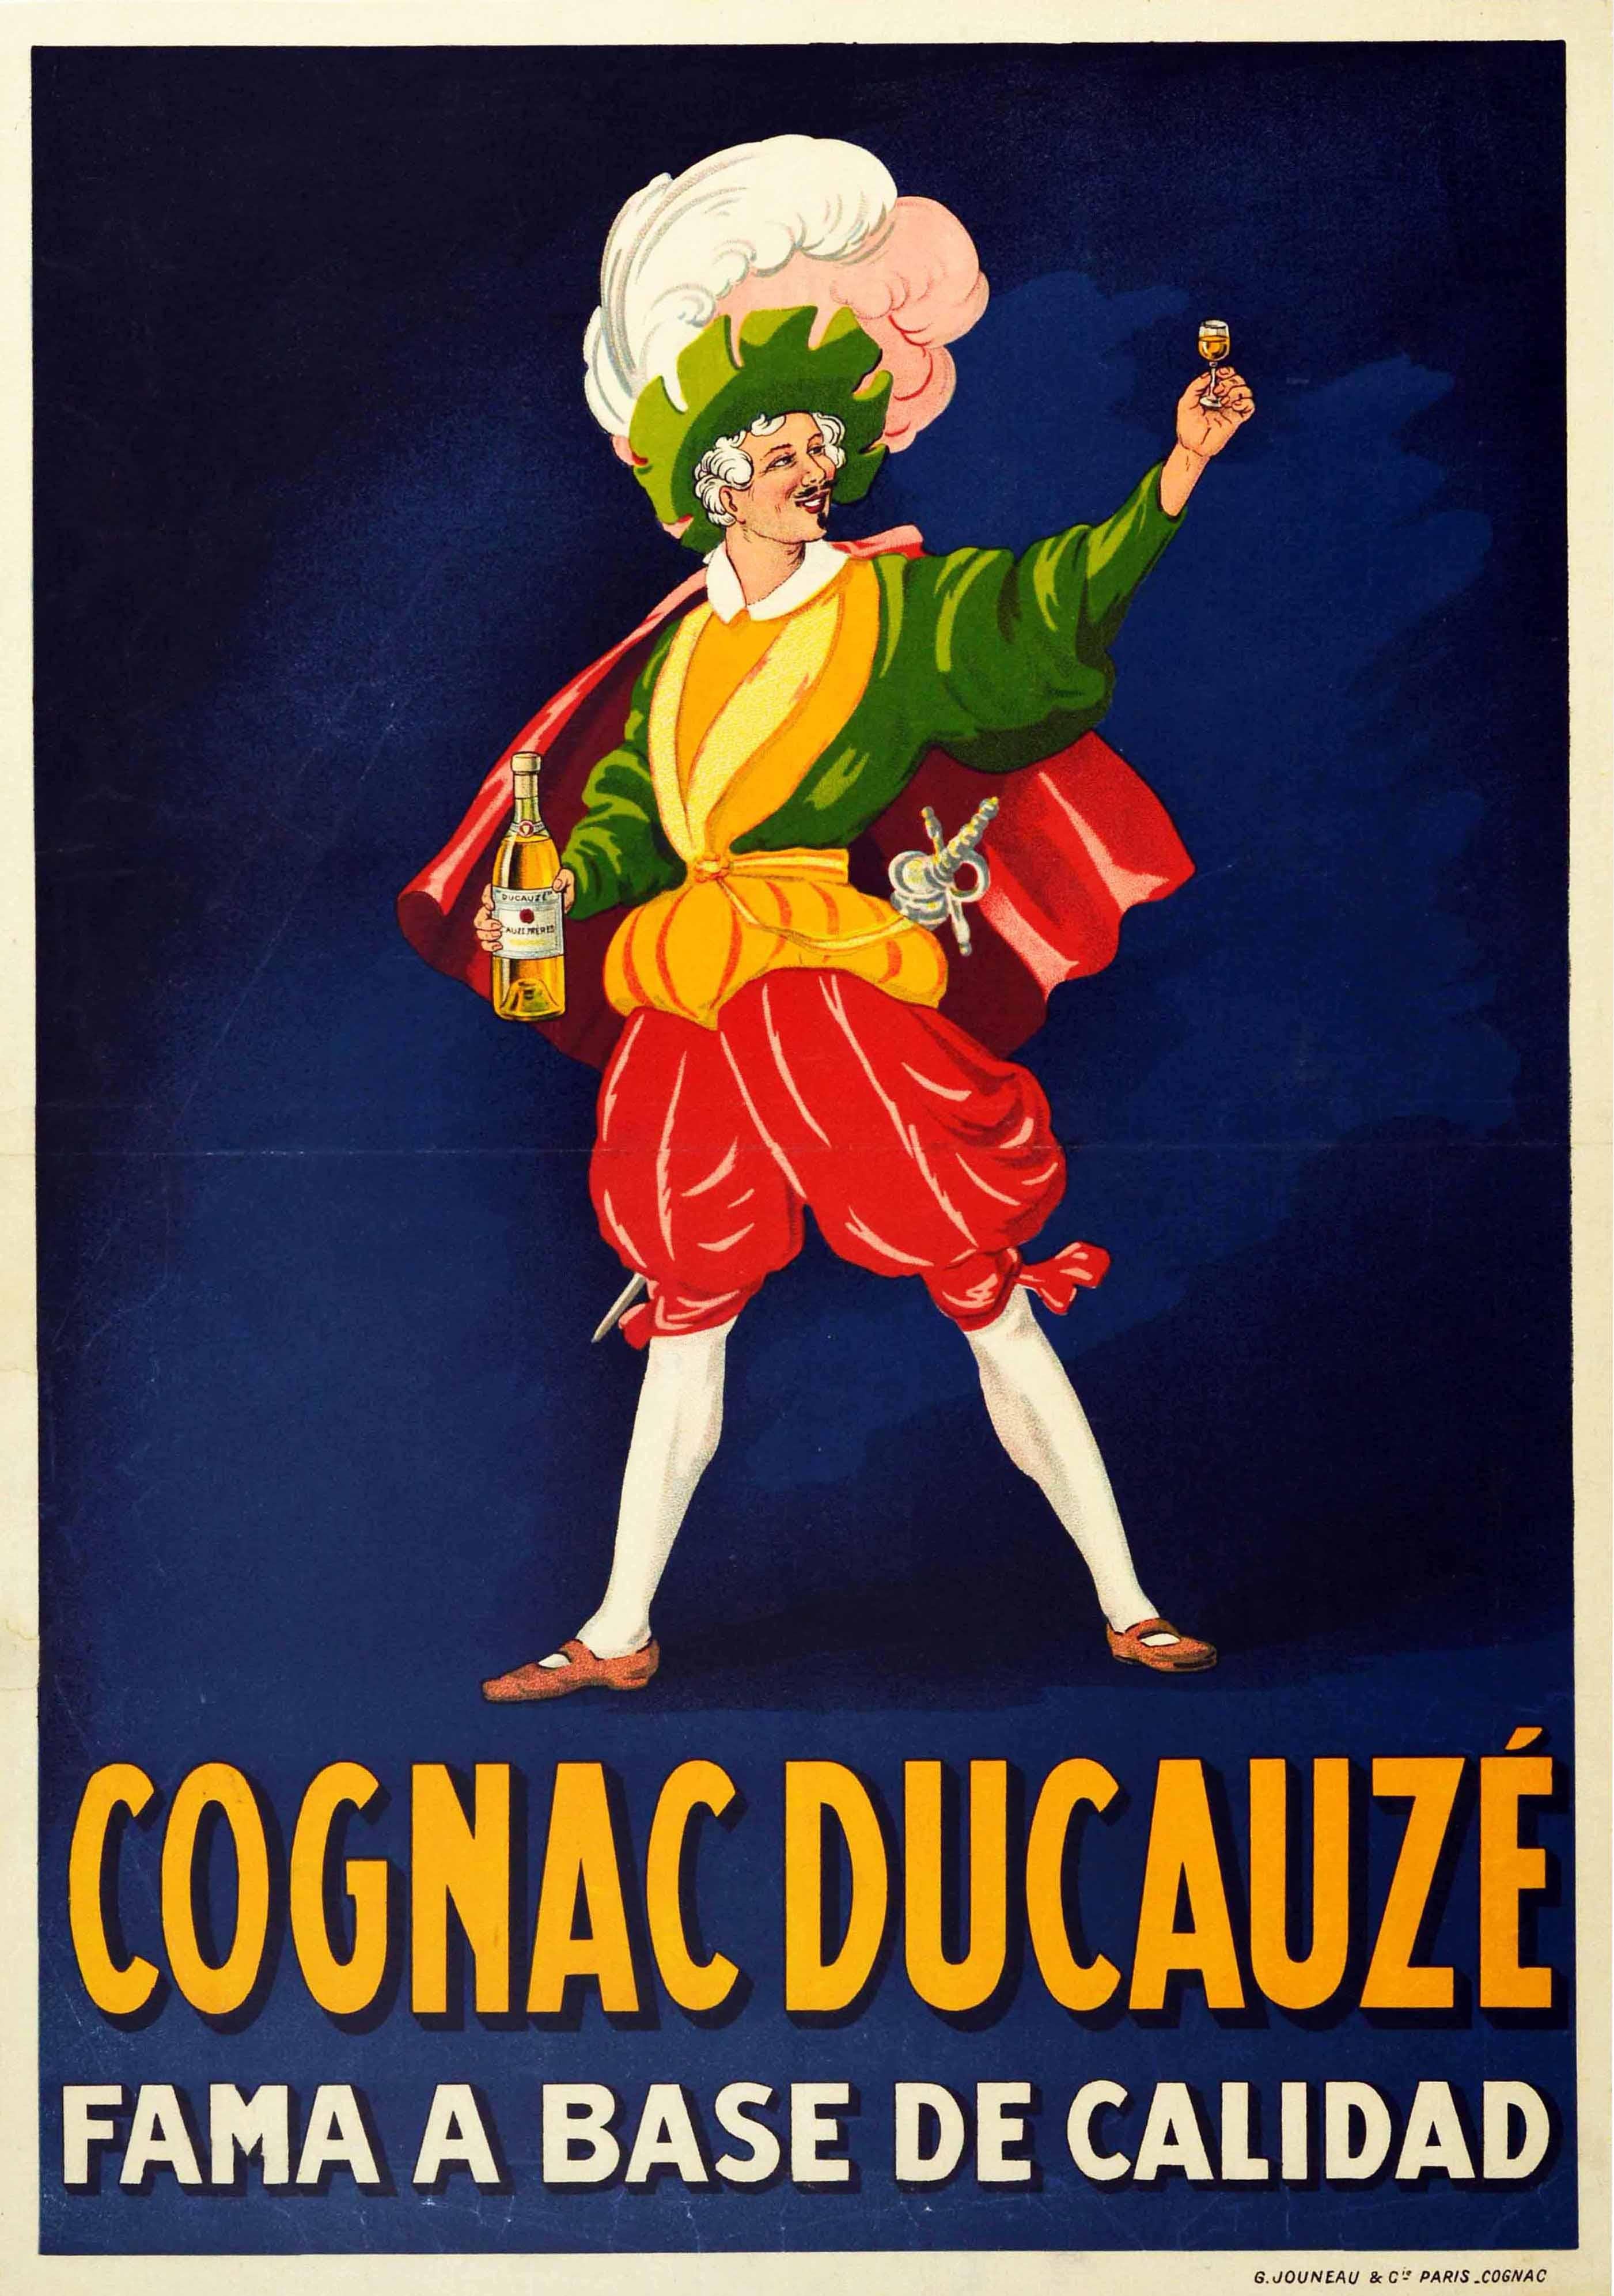 Unknown Print – Original Antikes Getränke-Poster Cognac Ducauze Fama A Base De Calidad Fame Qualität